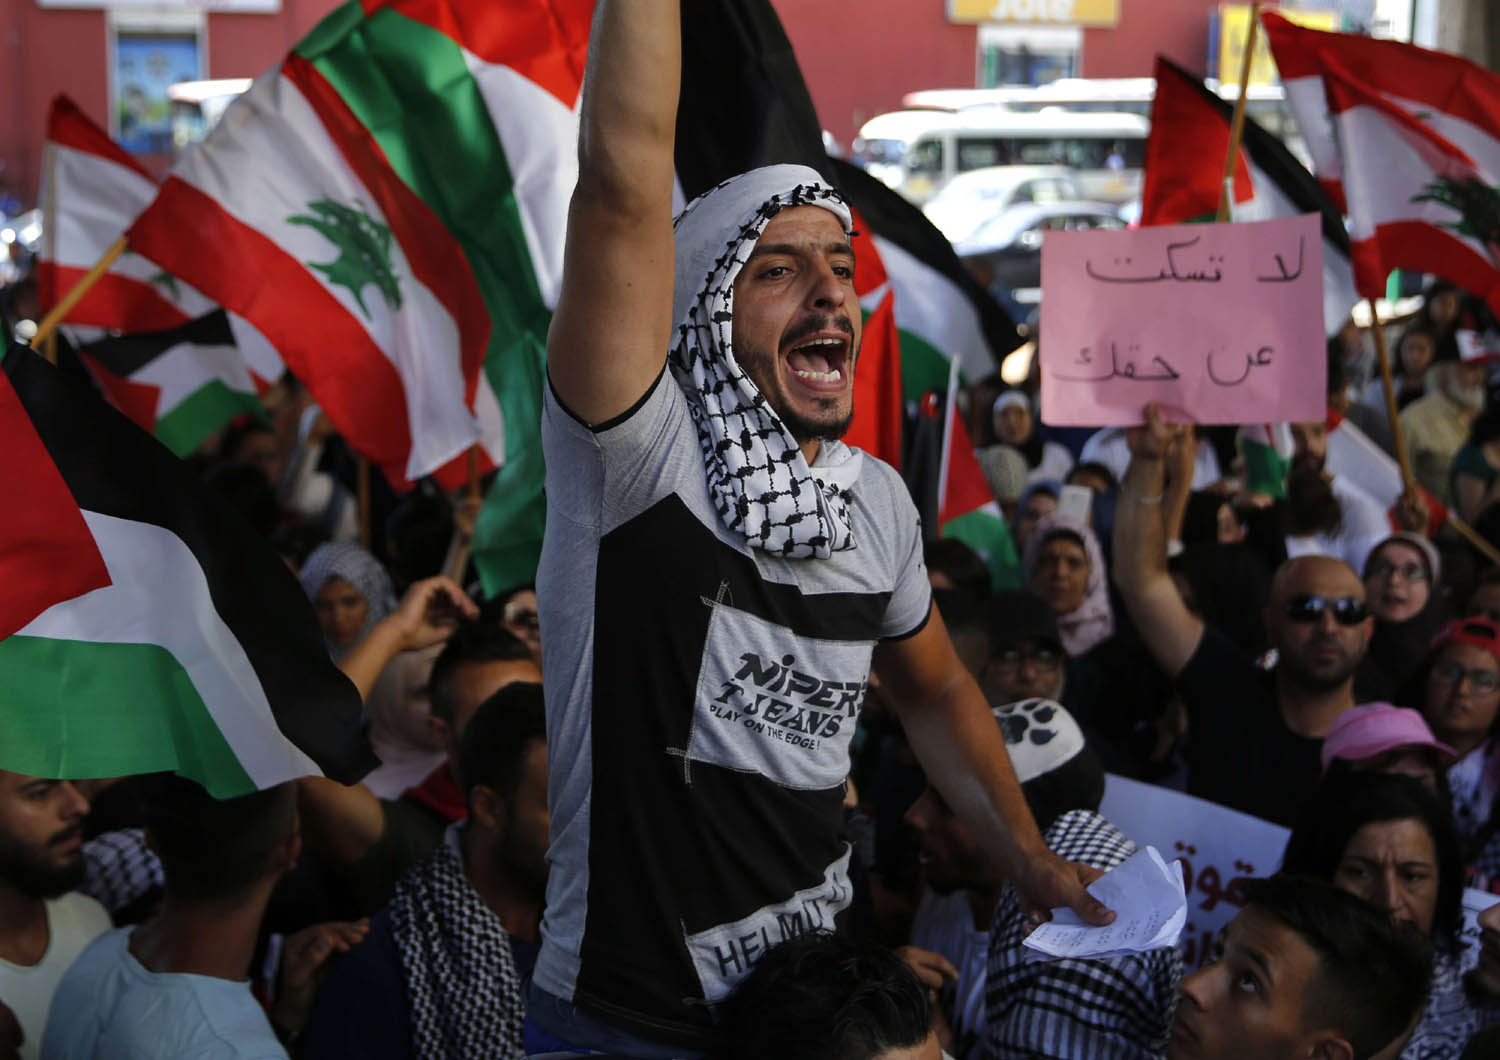 فلسطينيون يتظاهرون للمطالبة بحقوقهم في لبنان